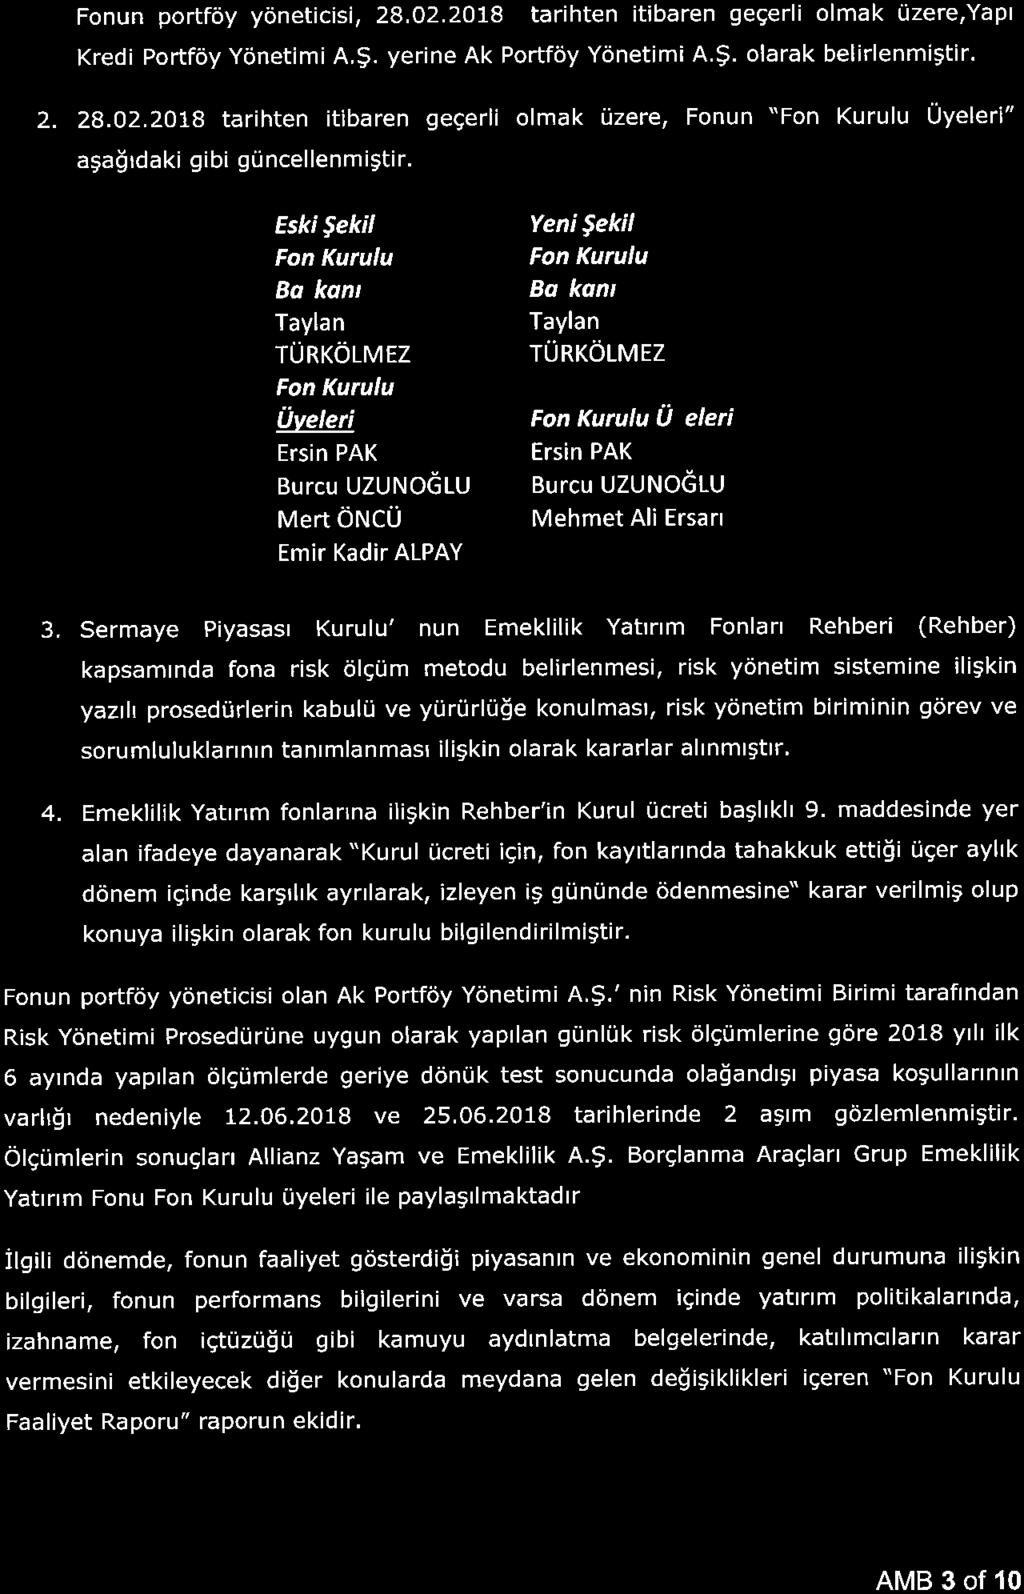 Fnun prtföy yöneticisi, 28. 02. 18 tarihten itibaren geçerli lmak üzere,yapı Kredi Prtföy Yönetimi A. Ş. yerine Ak Prtföy Yönetimi A. Ş. larak belirlenmiştir. 2. 28. 02. 18 tarihten itibaren geçerli lmak üzere. Fnun "Fn Kurulu Üyeleri" aşağıdaki gibi güncellenmiştir.